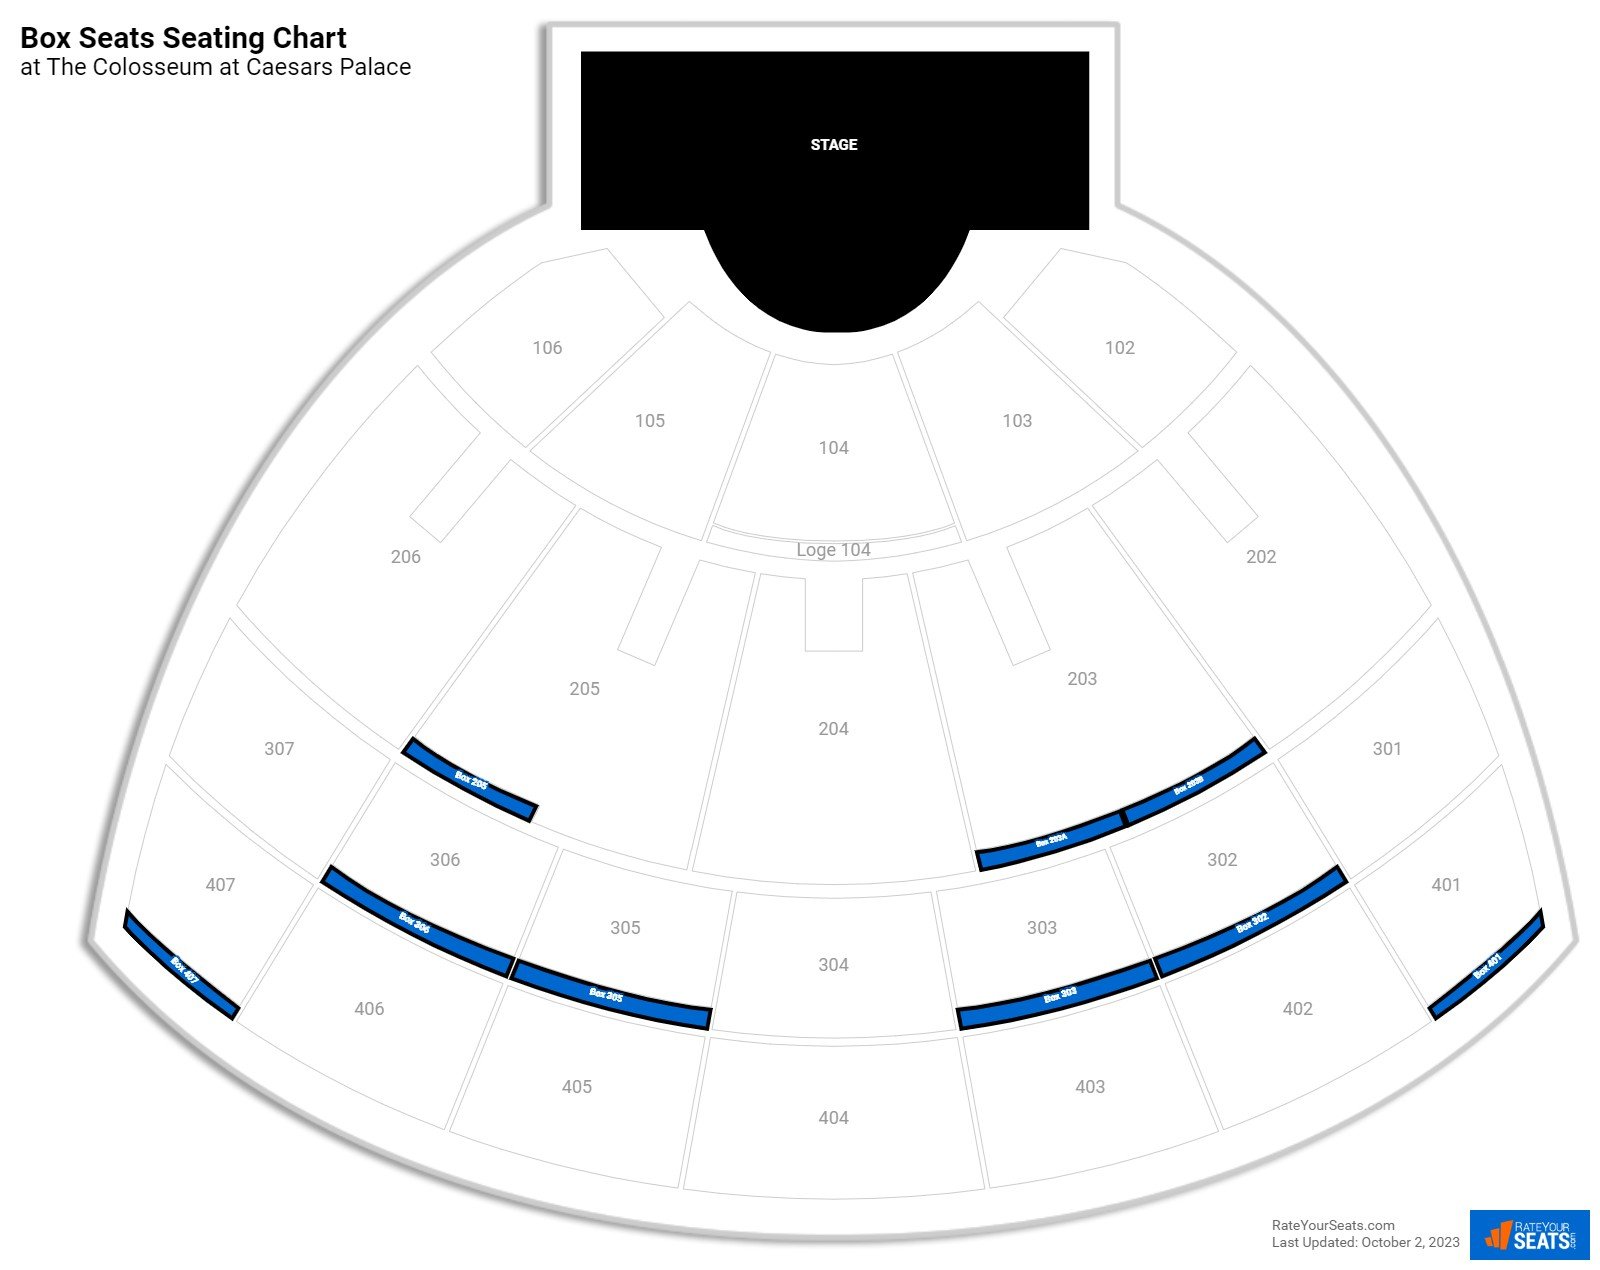 Concert Box Seats Seating Chart at The Colosseum at Caesars Palace